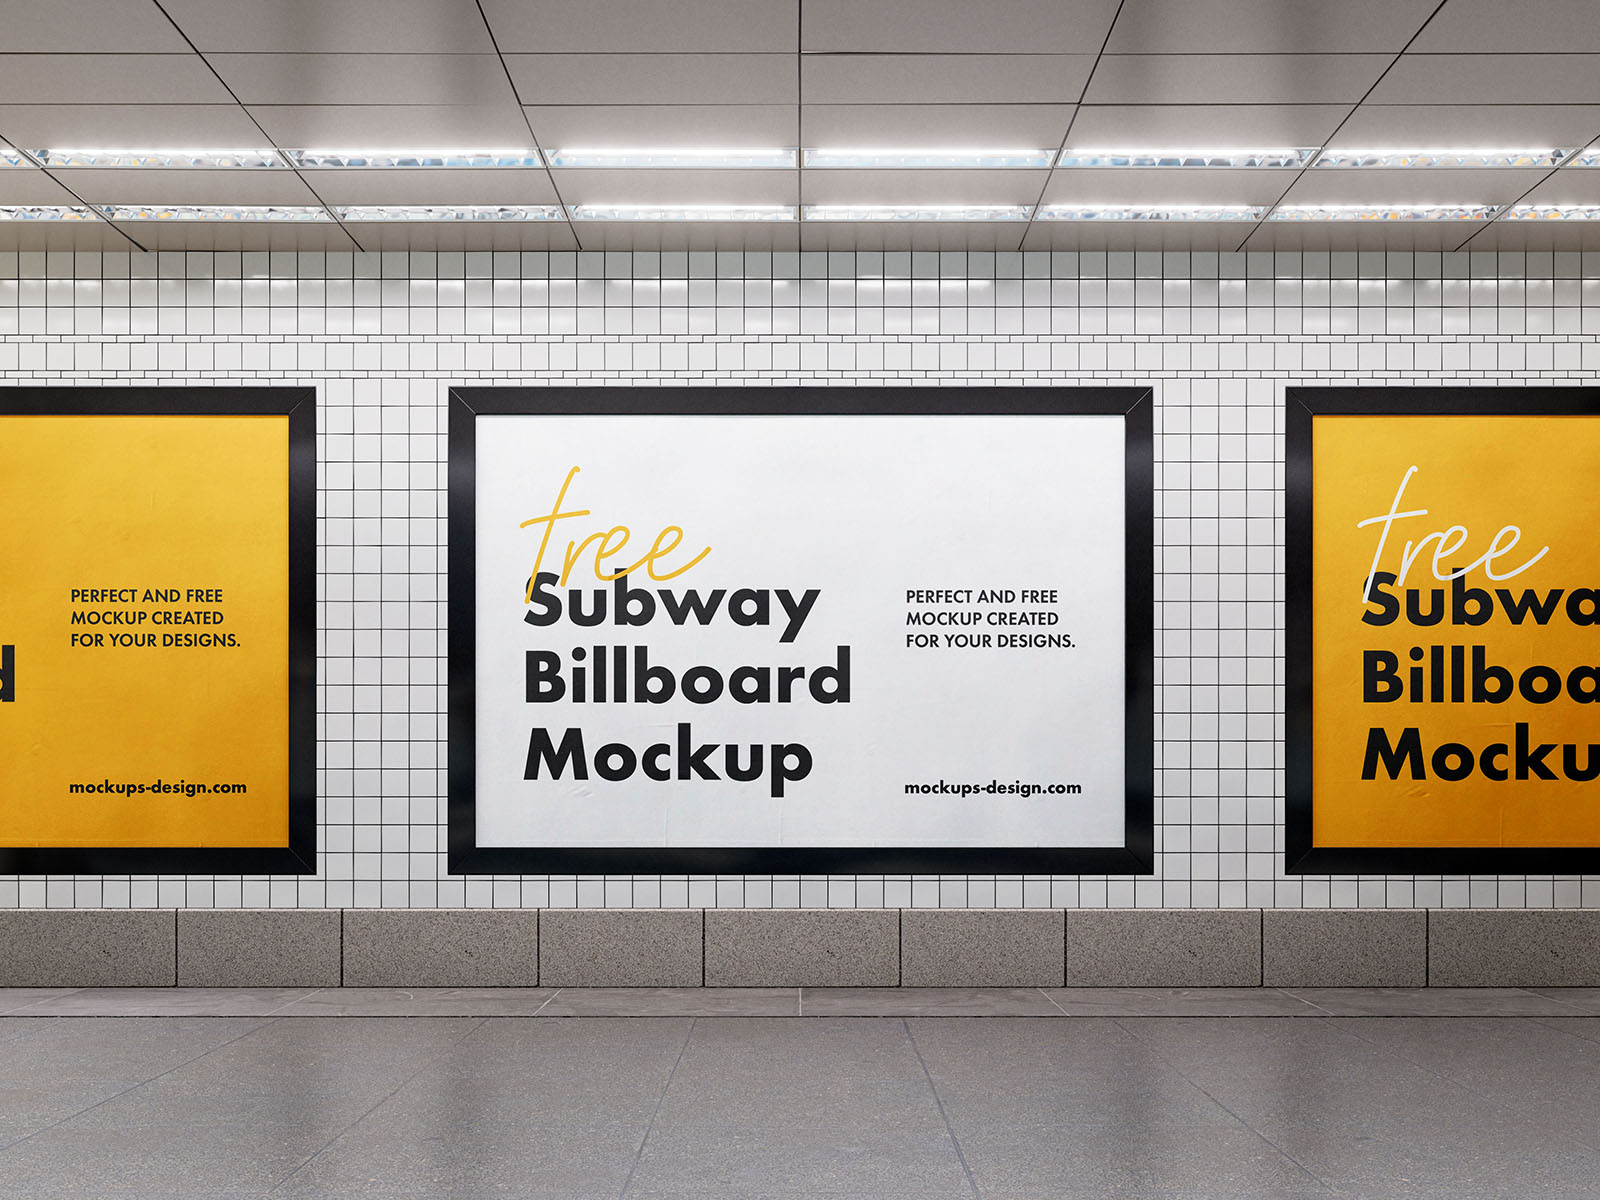 Subway billboard mockup